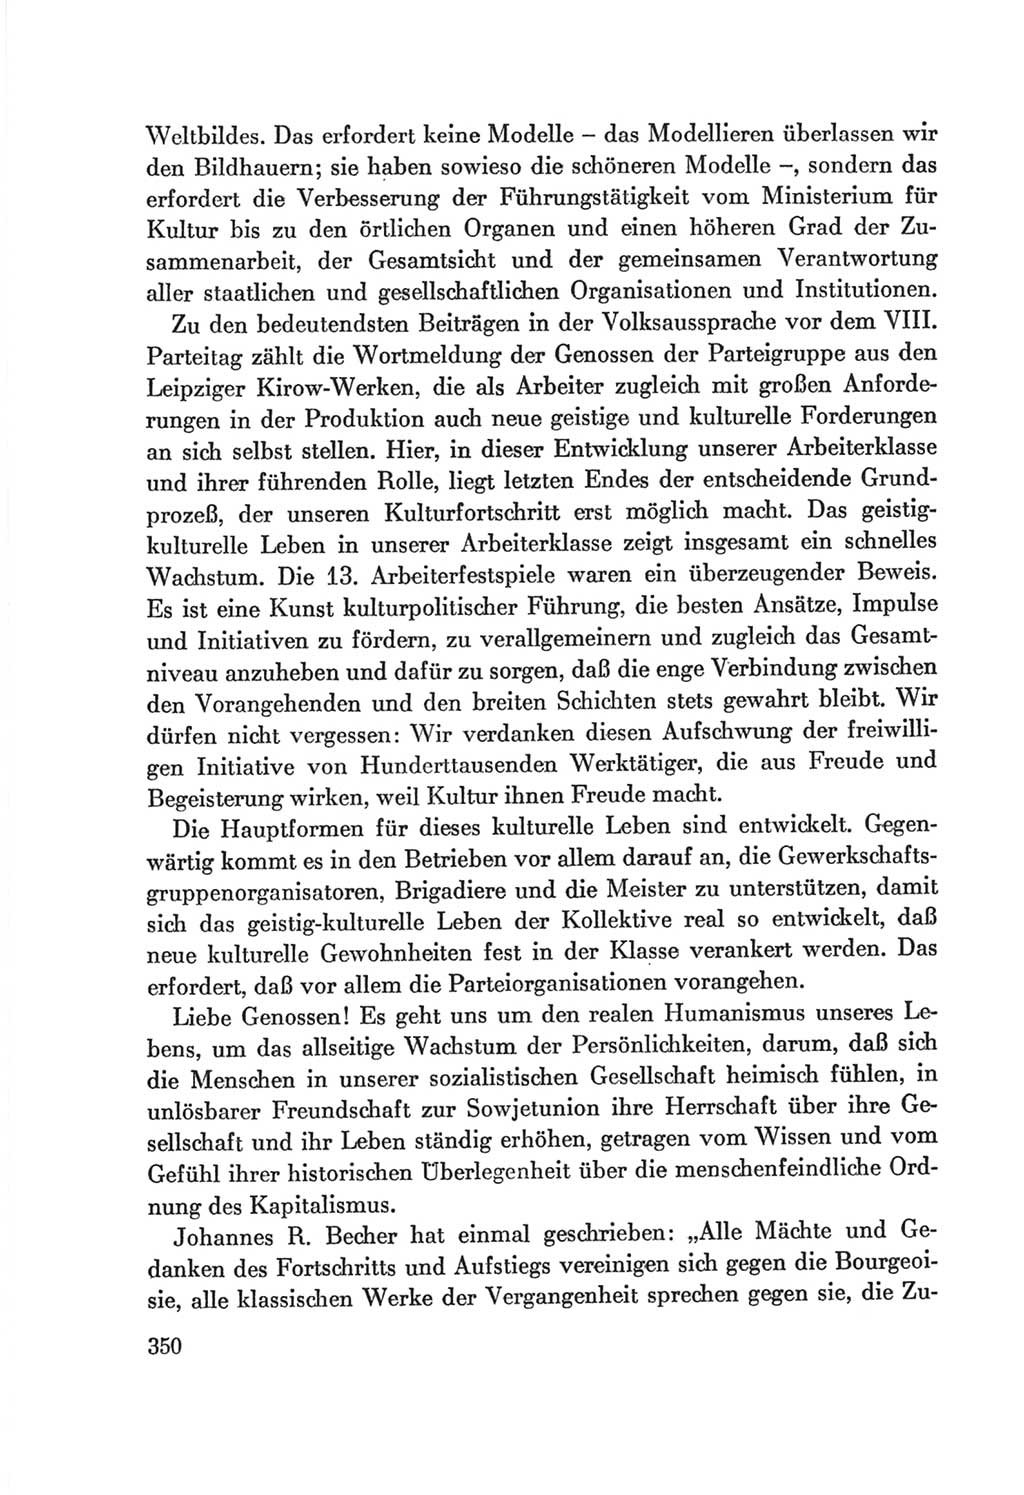 Protokoll der Verhandlungen des Ⅷ. Parteitages der Sozialistischen Einheitspartei Deutschlands (SED) [Deutsche Demokratische Republik (DDR)] 1971, Band 1, Seite 350 (Prot. Verh. Ⅷ. PT SED DDR 1971, Bd. 1, S. 350)